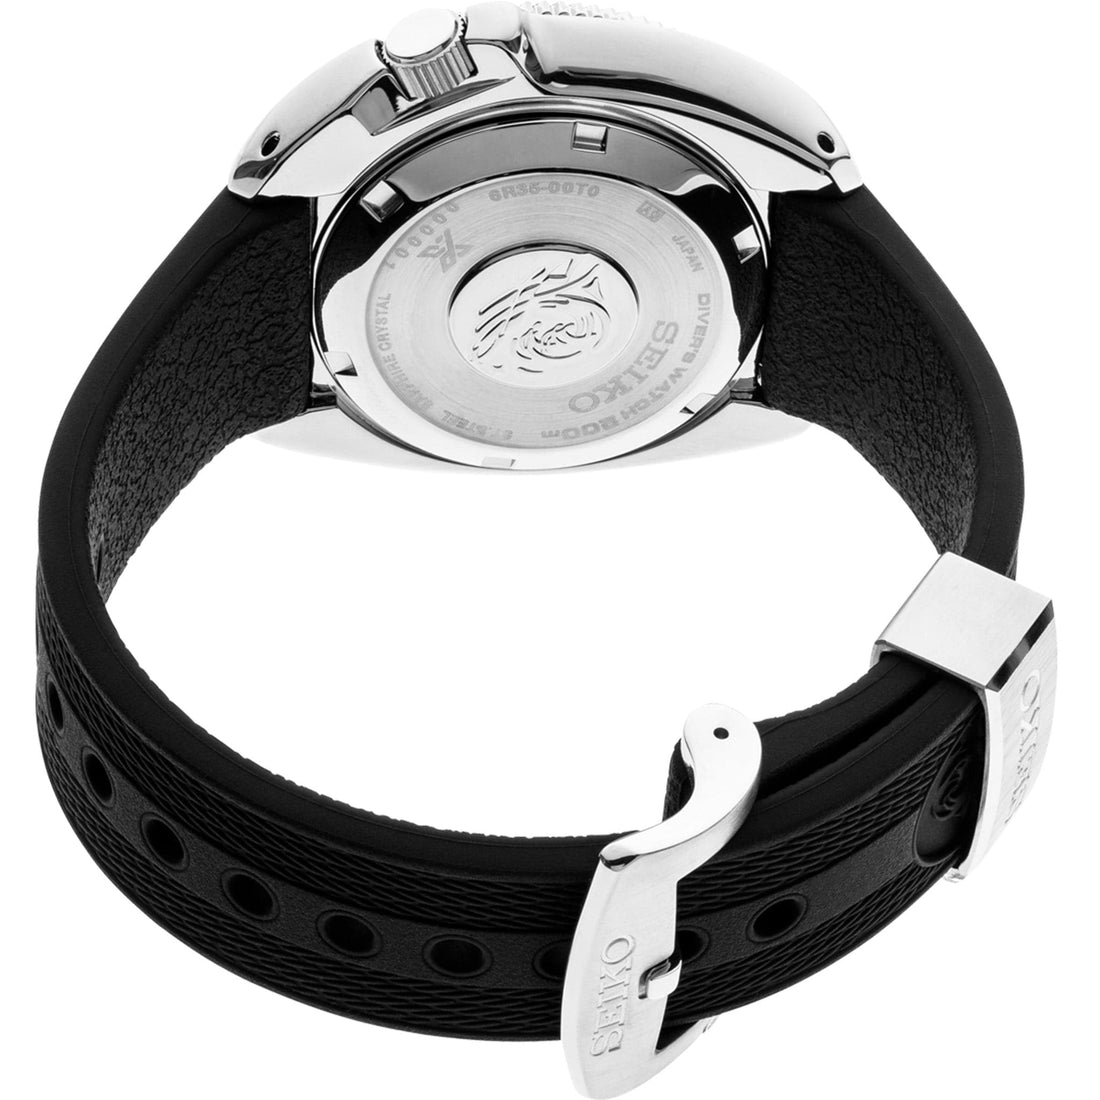 Seiko Prospex SPB153 Captain Willard Automatic Watch | Skeie's Jewelers